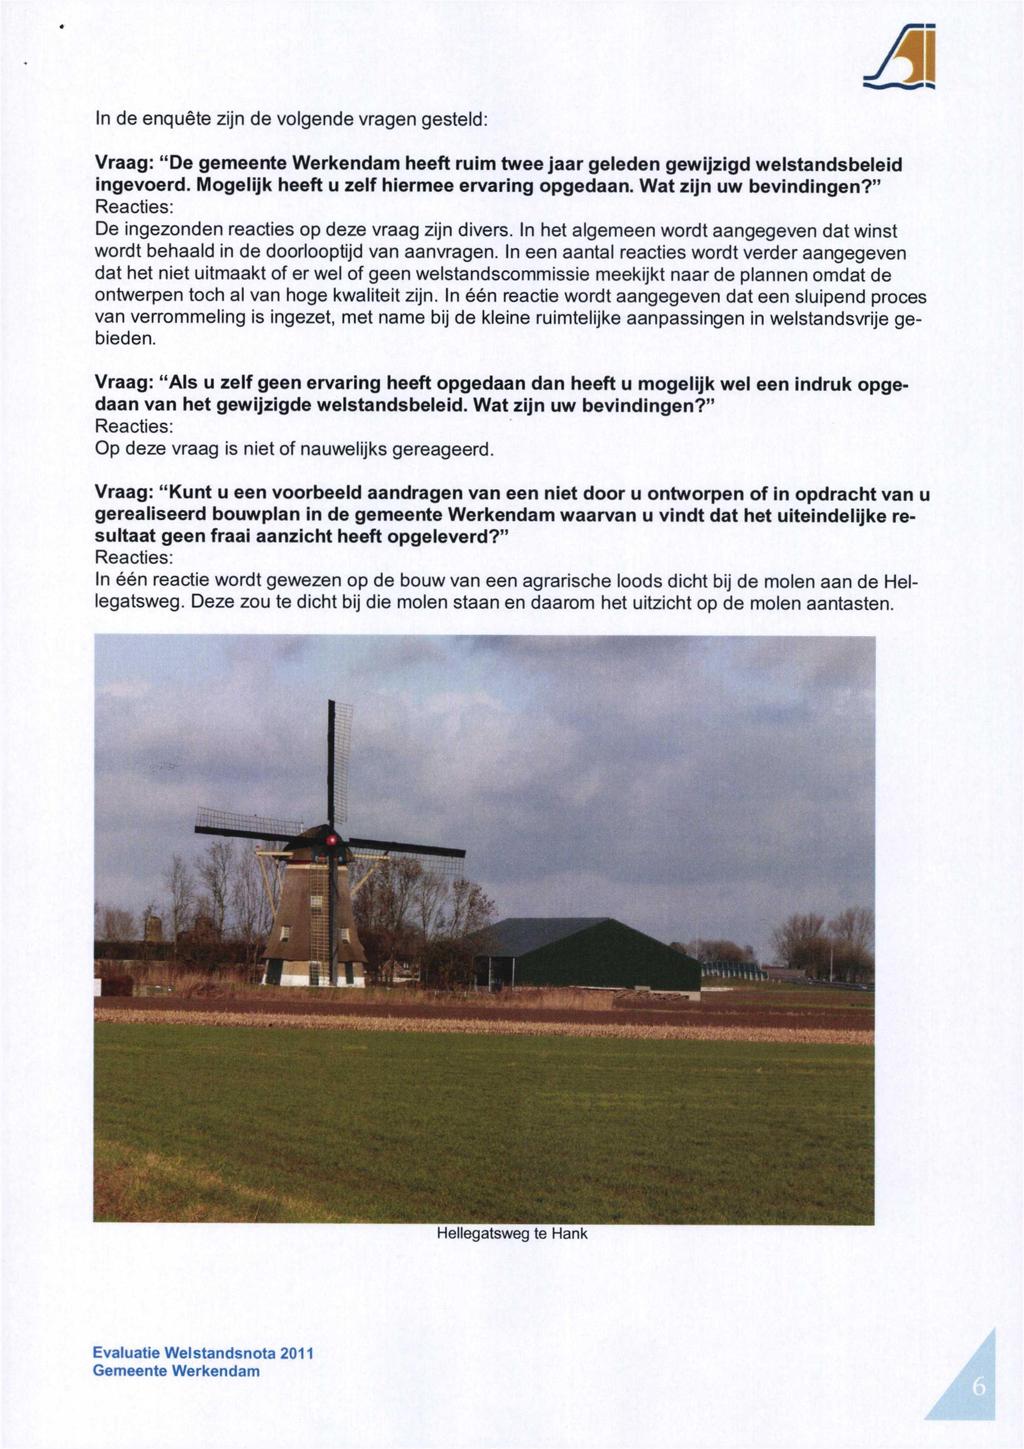 In de enquête zijn de volgende vragen gesteld: Vraag: "De gemeente Werkendam heeft ruim twee jaar geleden gewijzigd welstandsbeleid ingevoerd. Mogelijk heeft u zelf hiermee ervaring opgedaan.